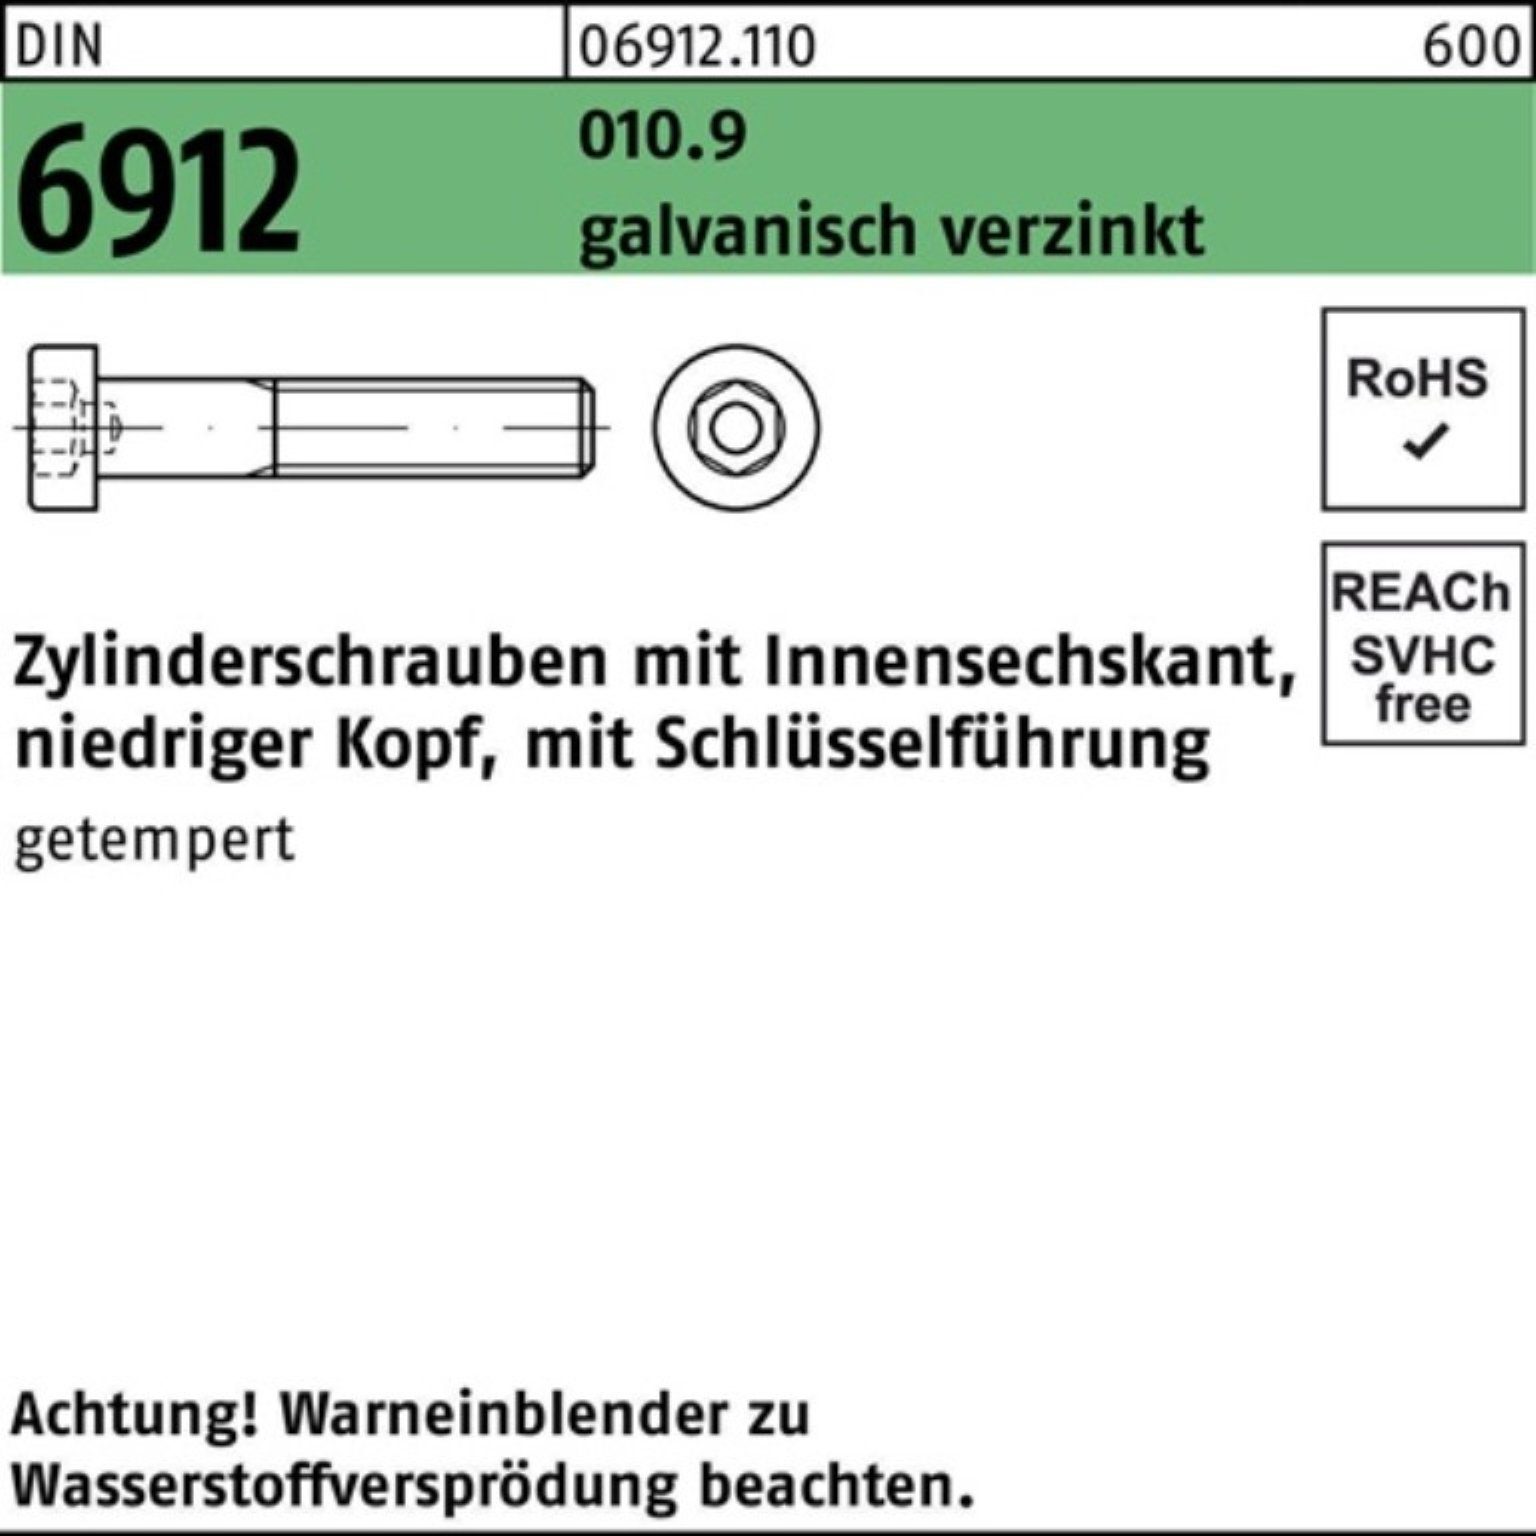 Reyher Zylinderschraube 200er Pack Zylinderschraube Innen-6kt M8x30 6912 010.9 galv.verz. DIN